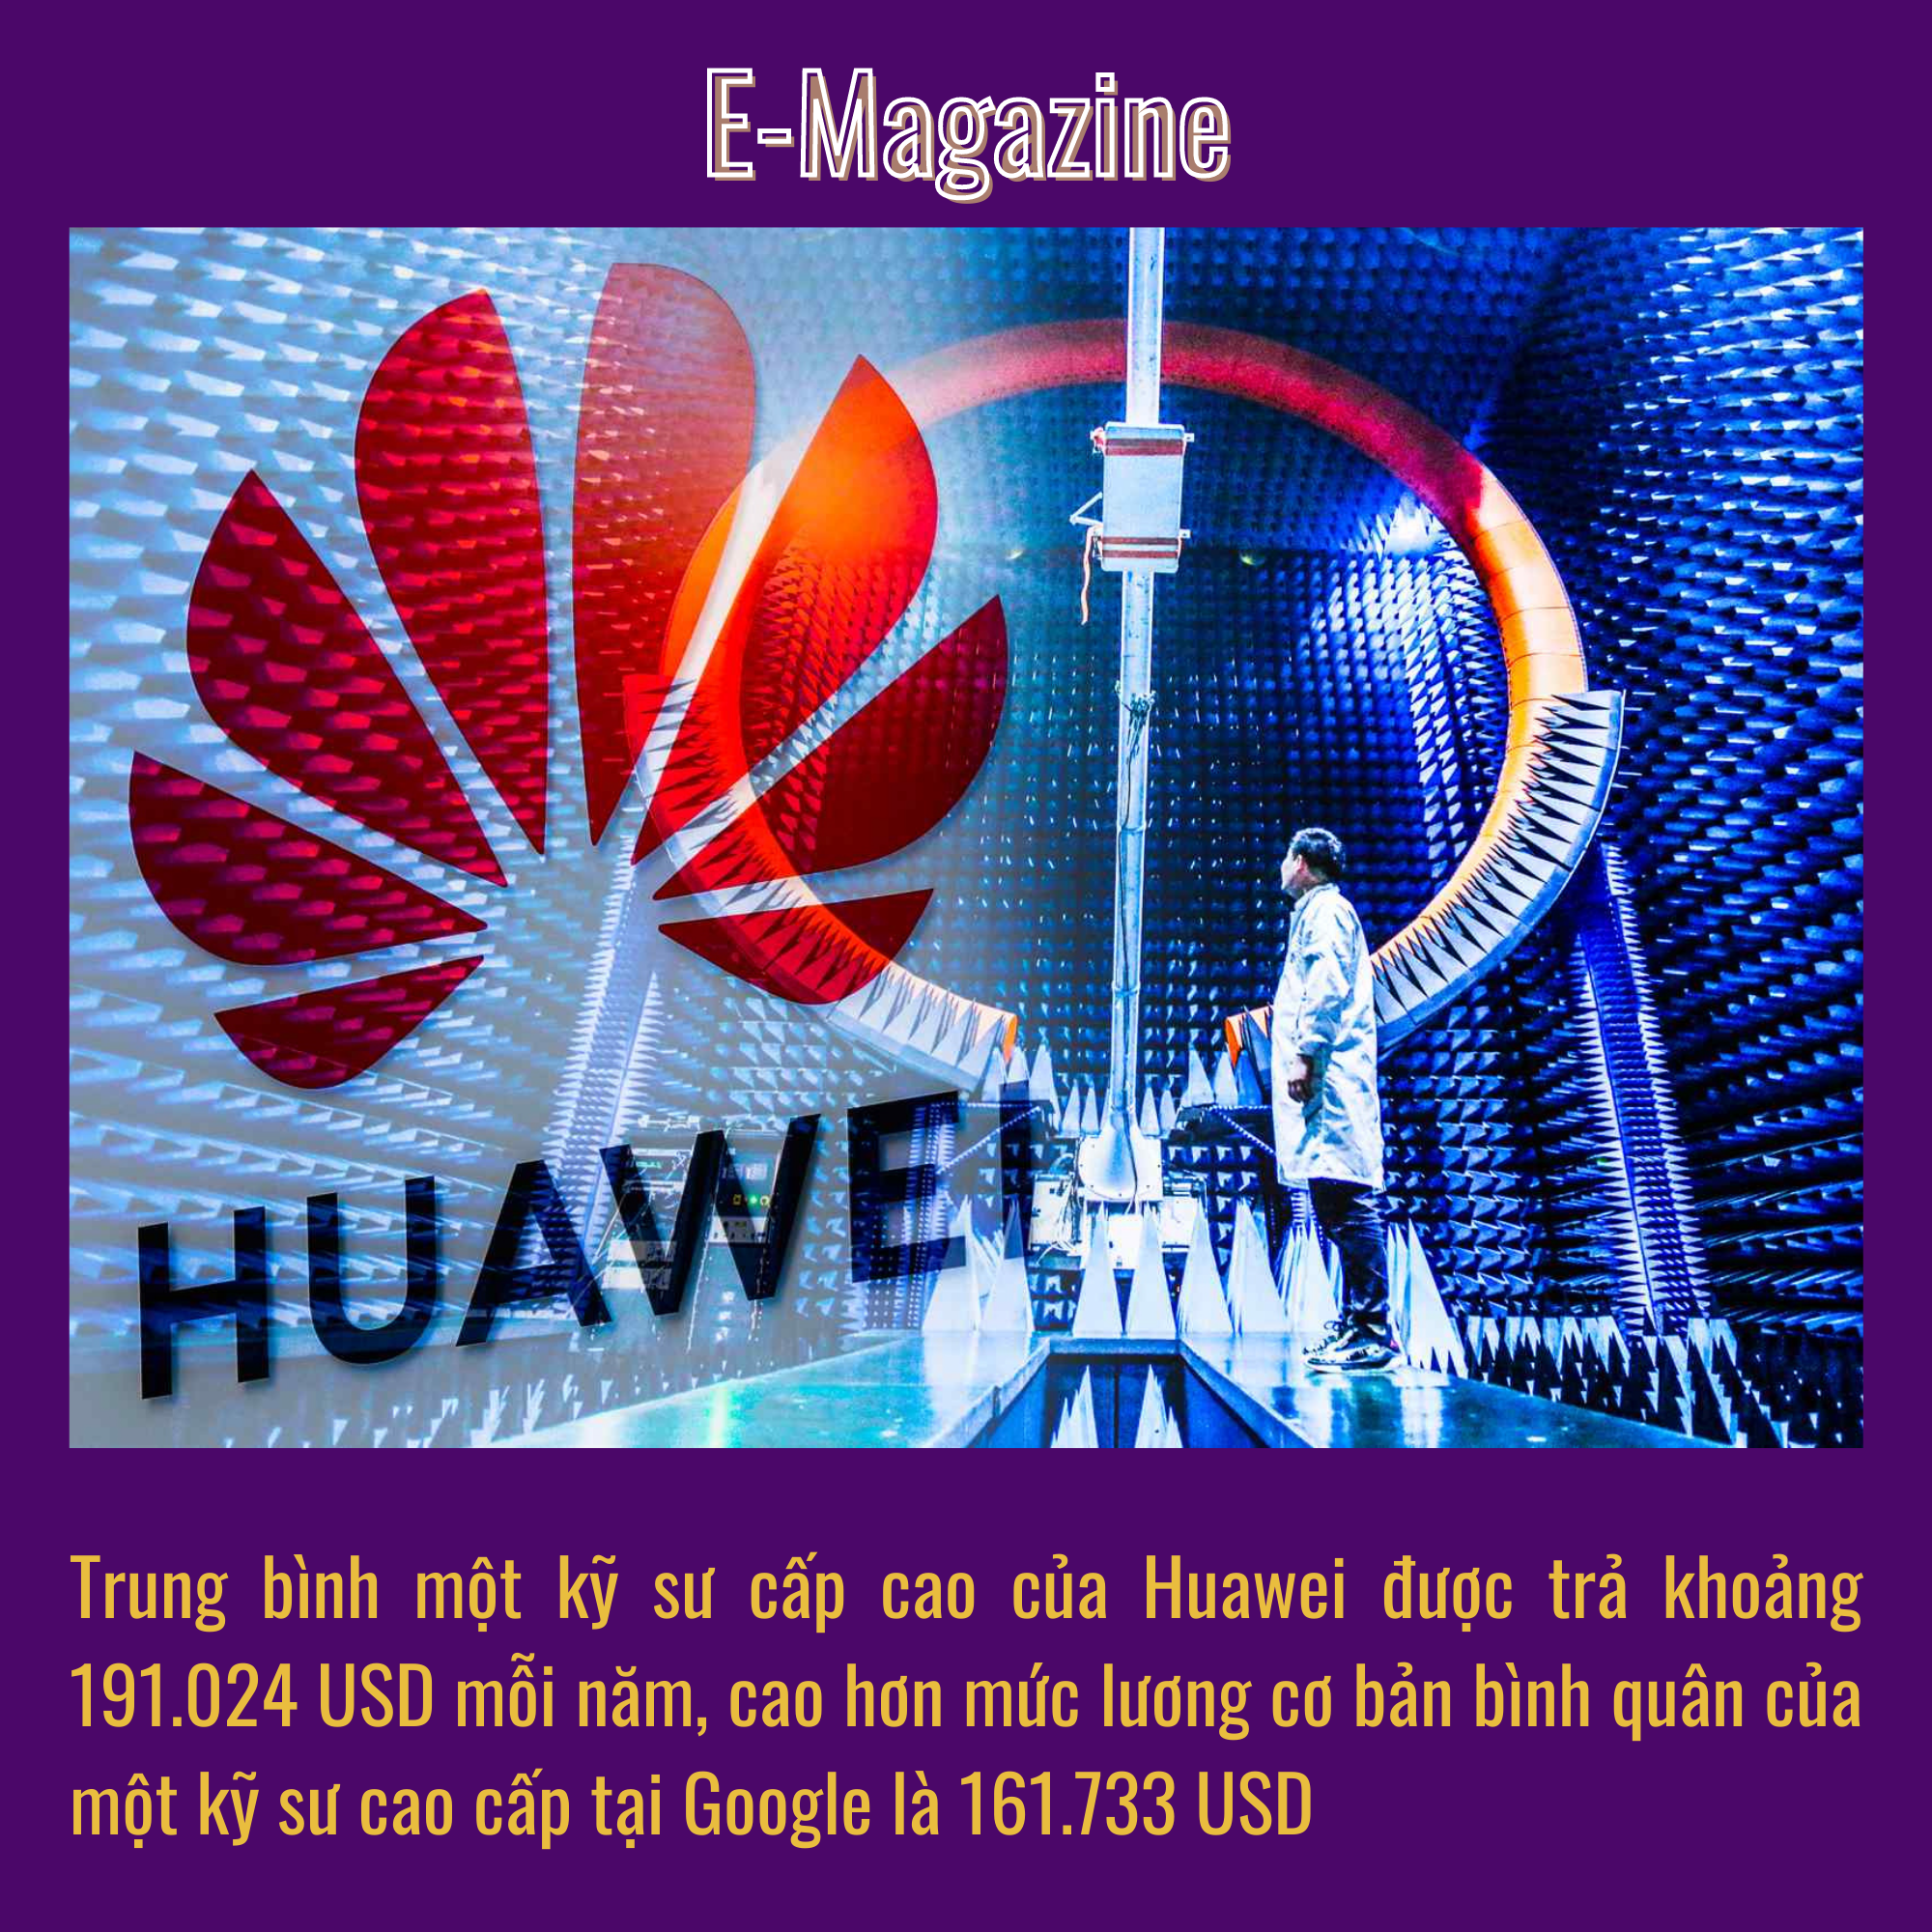 Hơn 2 năm lọt vào danh sách đen của Mỹ, Huawei đang &quot;tìm đường sống&quot; như thế nào? - Ảnh 4.